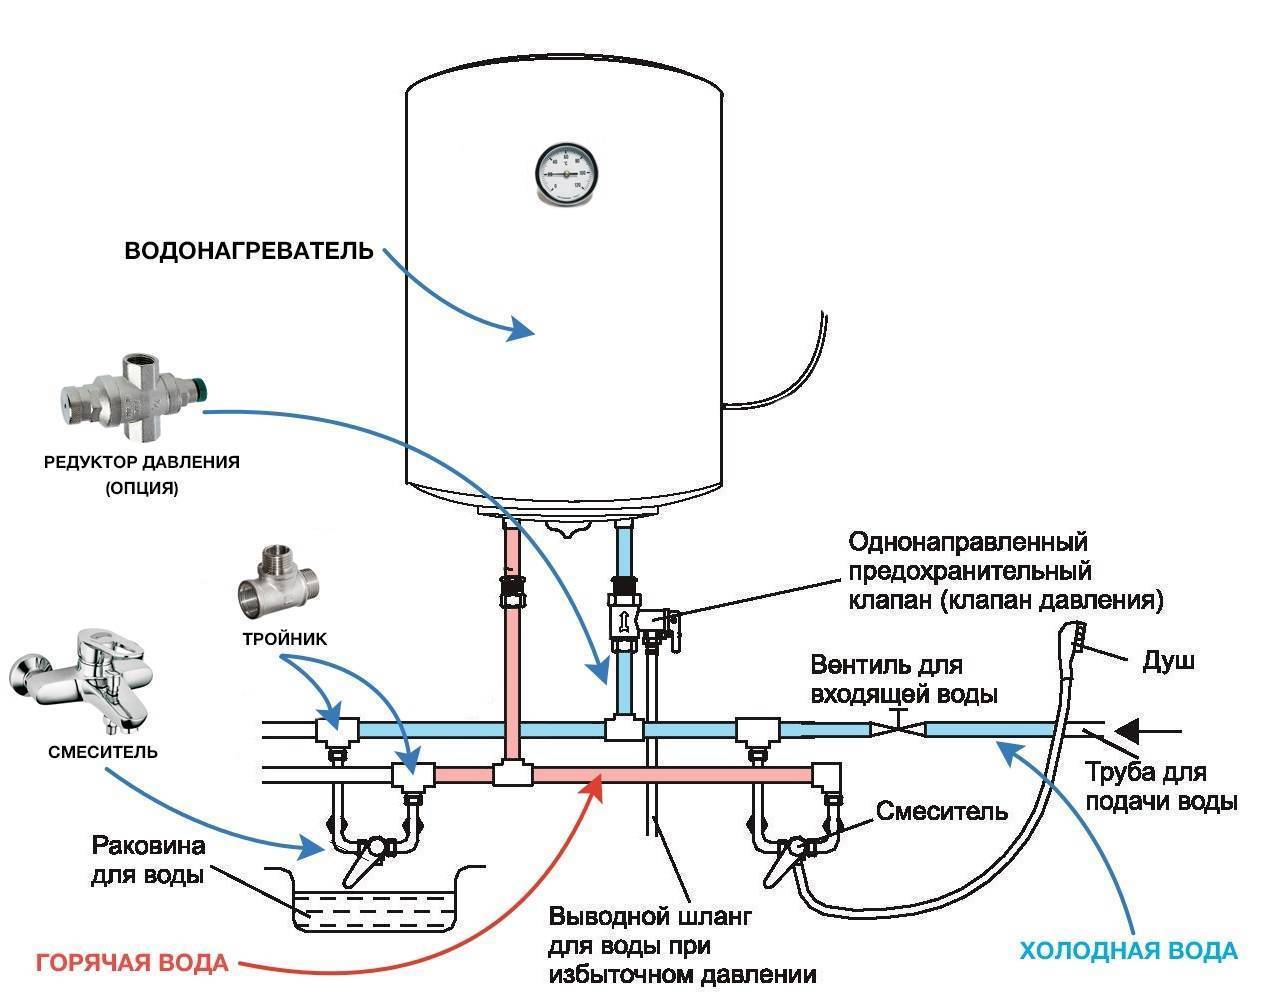 Как установить водонагреватель: накопительный (бойлер), проточные